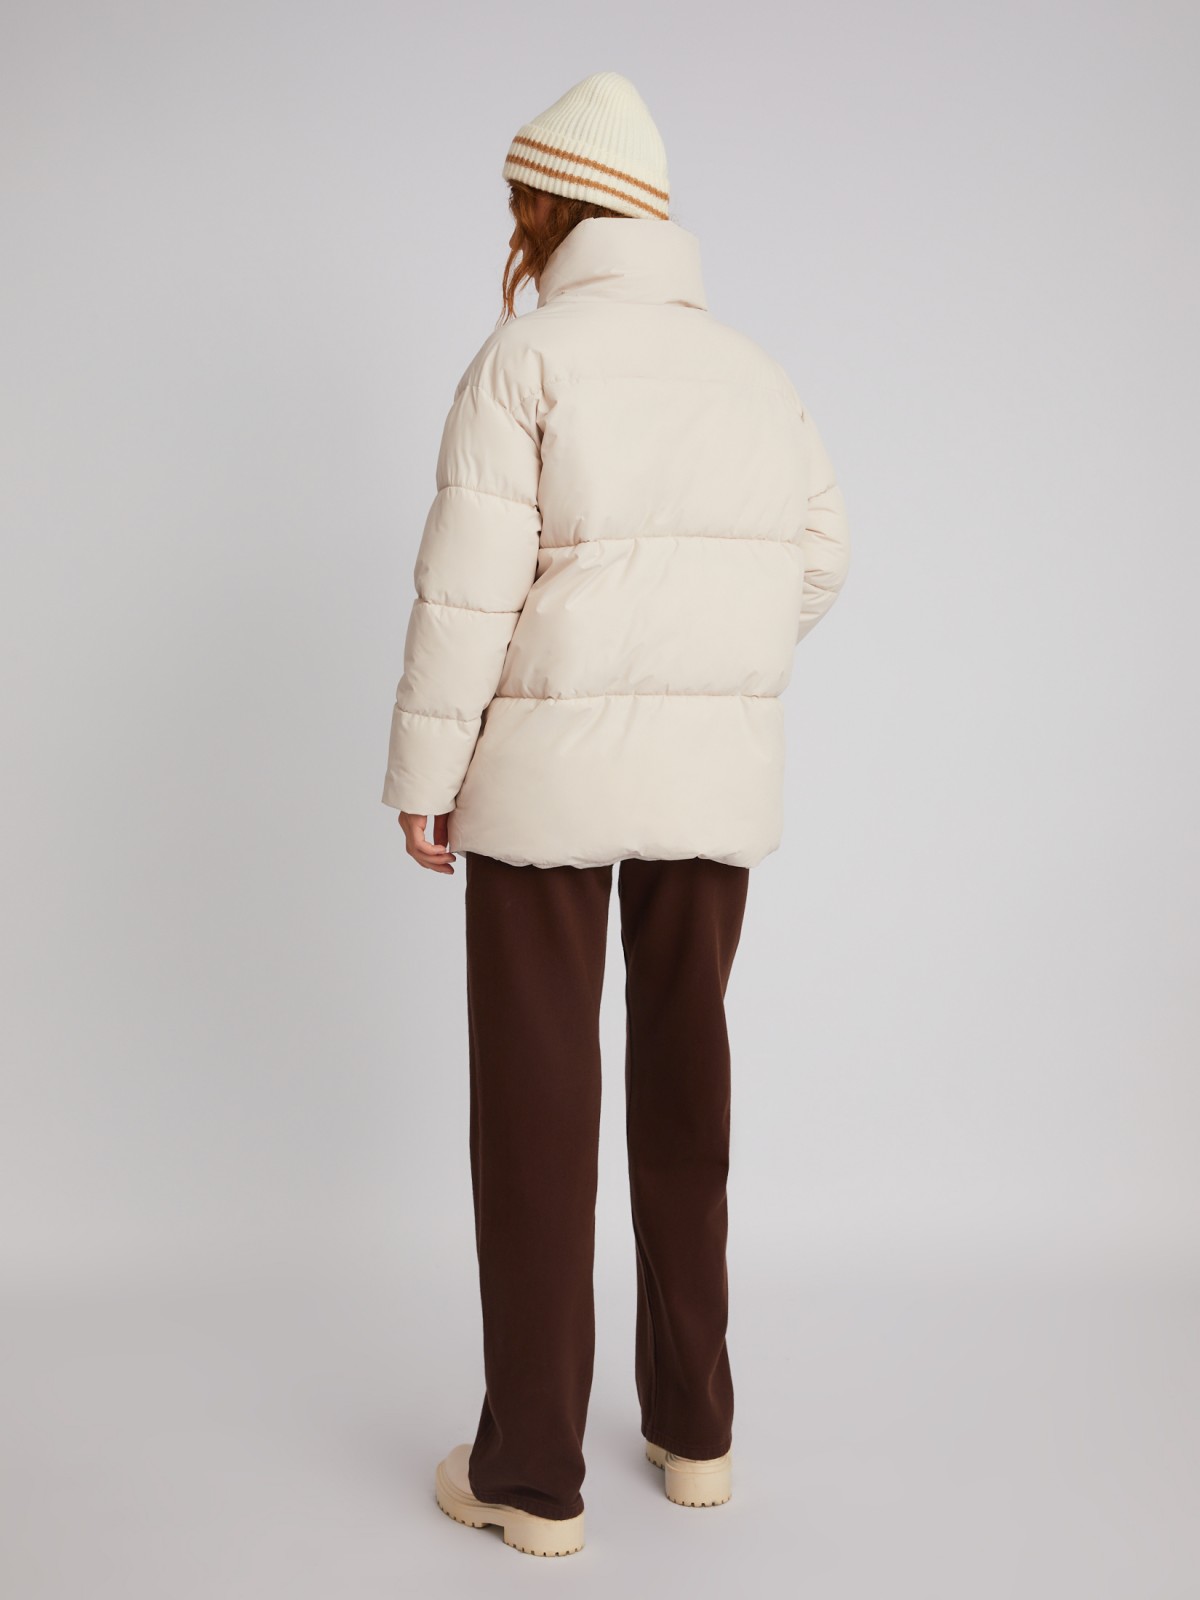 Тёплая стёганая дутая куртка оверсайз силуэта с высоким воротником zolla 023335102074, цвет молоко, размер S - фото 5